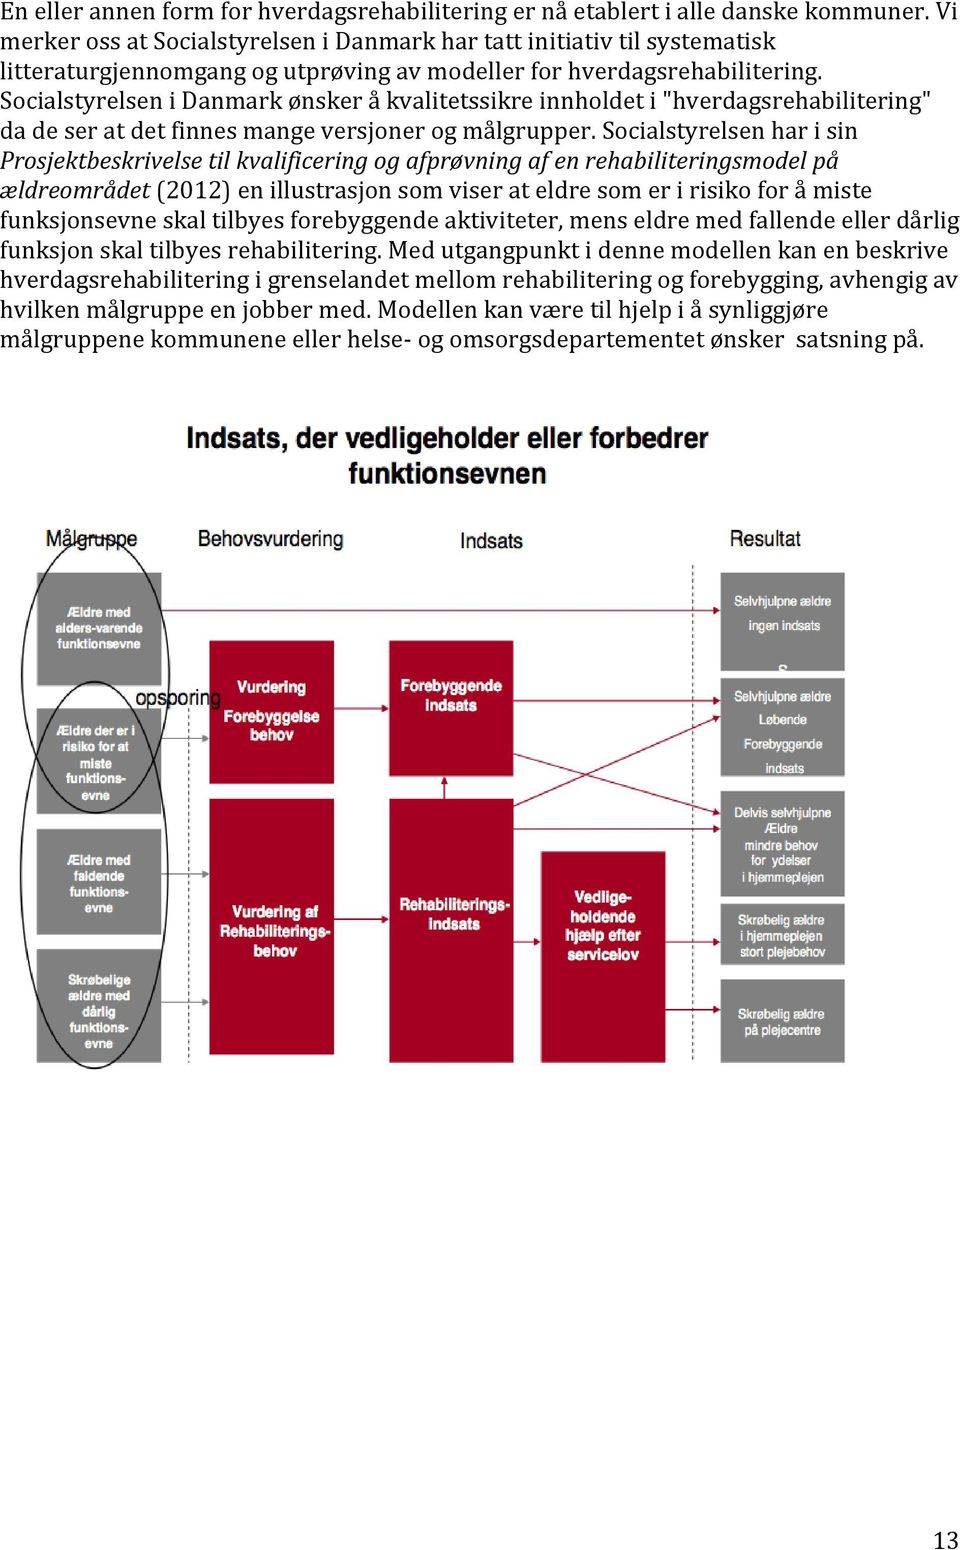 Socialstyrelsen i Danmark ønsker å kvalitetssikre innholdet i "hverdagsrehabilitering" da de ser at det finnes mange versjoner og målgrupper.